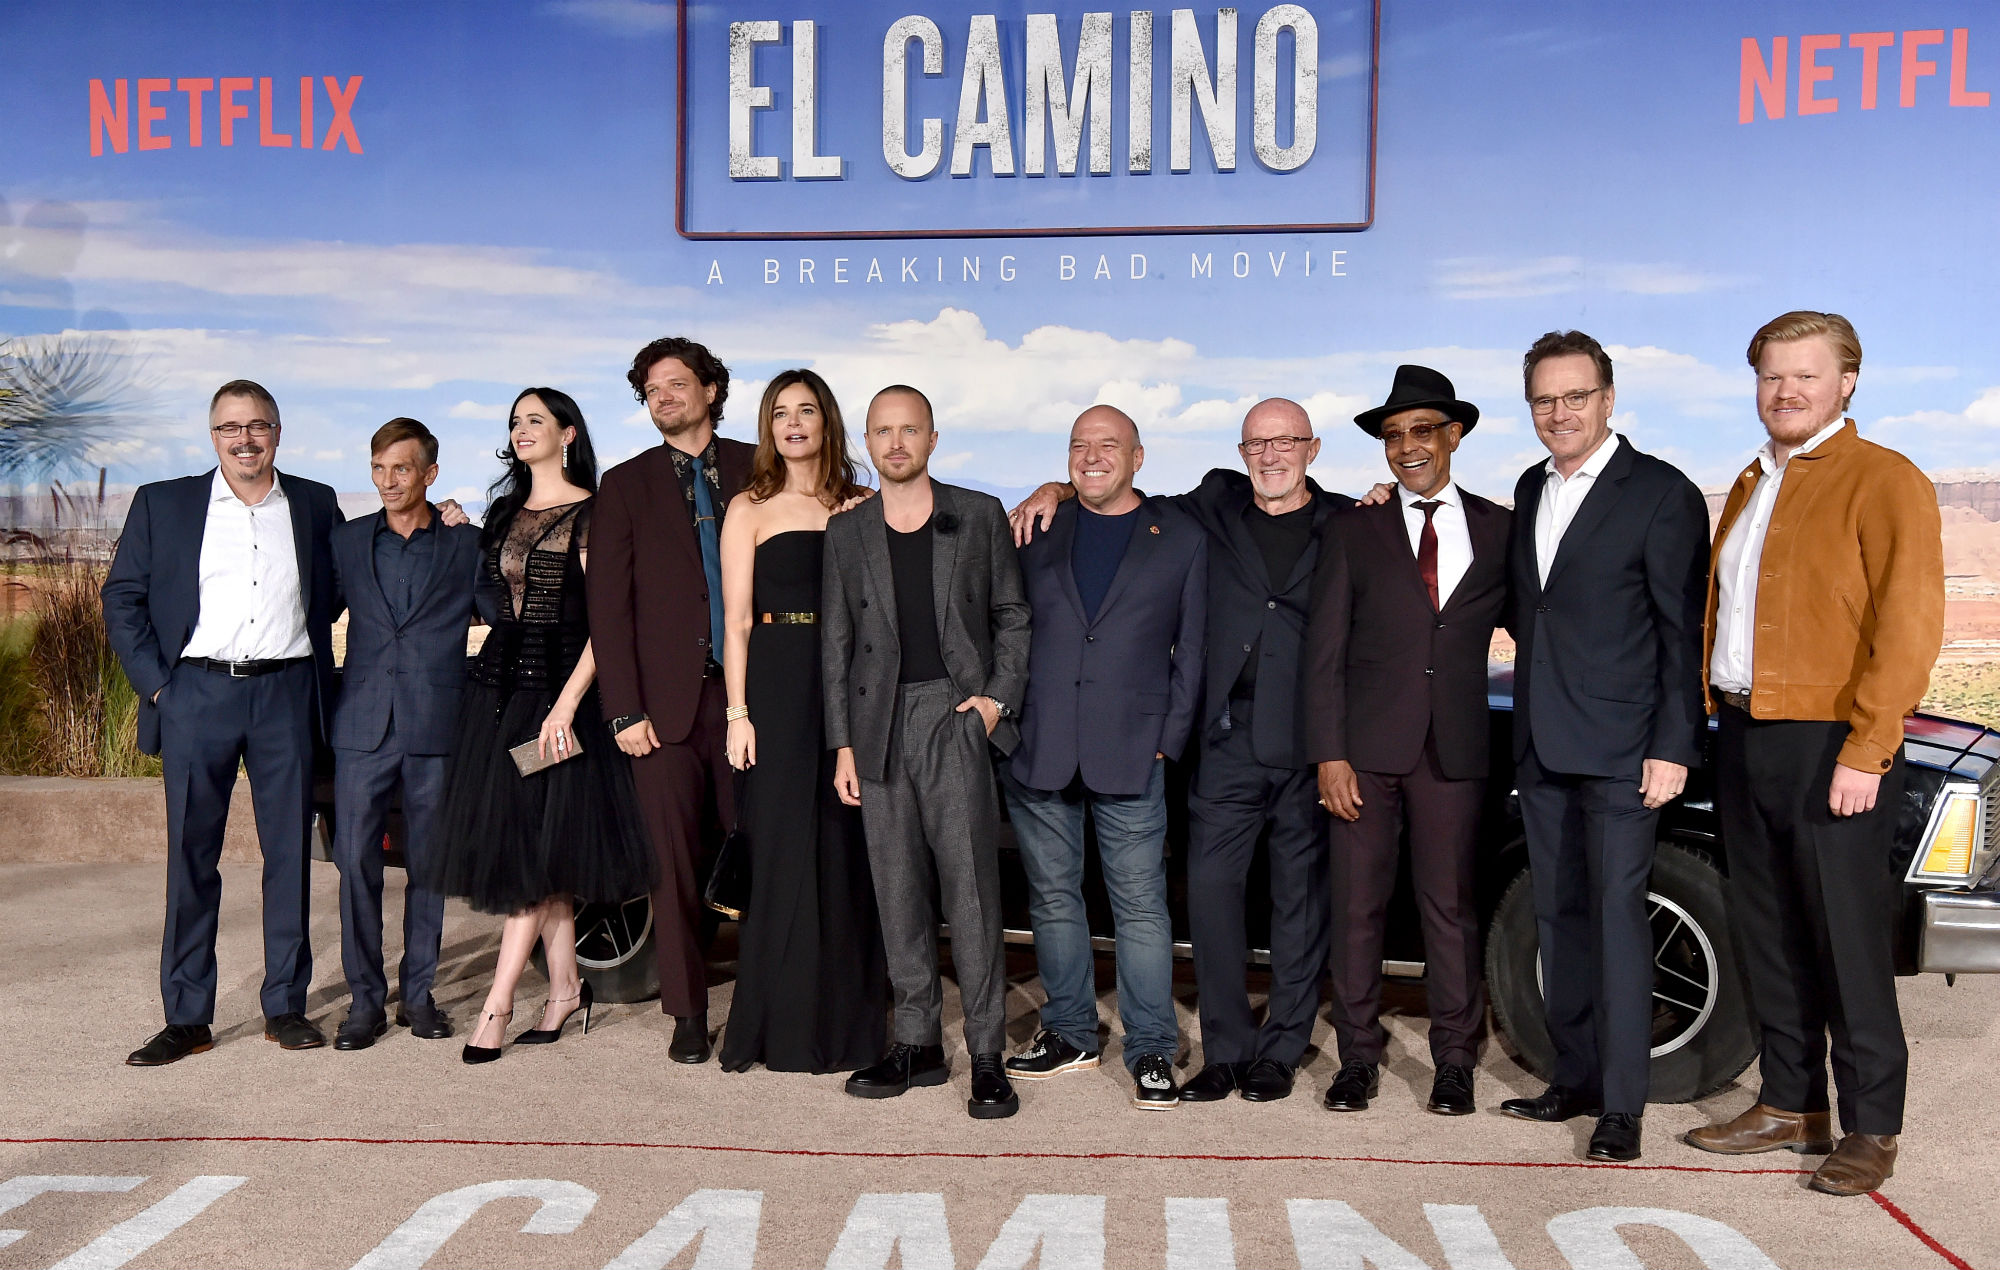 Видео: Звезды сериала «Во все тяжкие» реагируют на комментарии к трейлеру «Эль Камино»